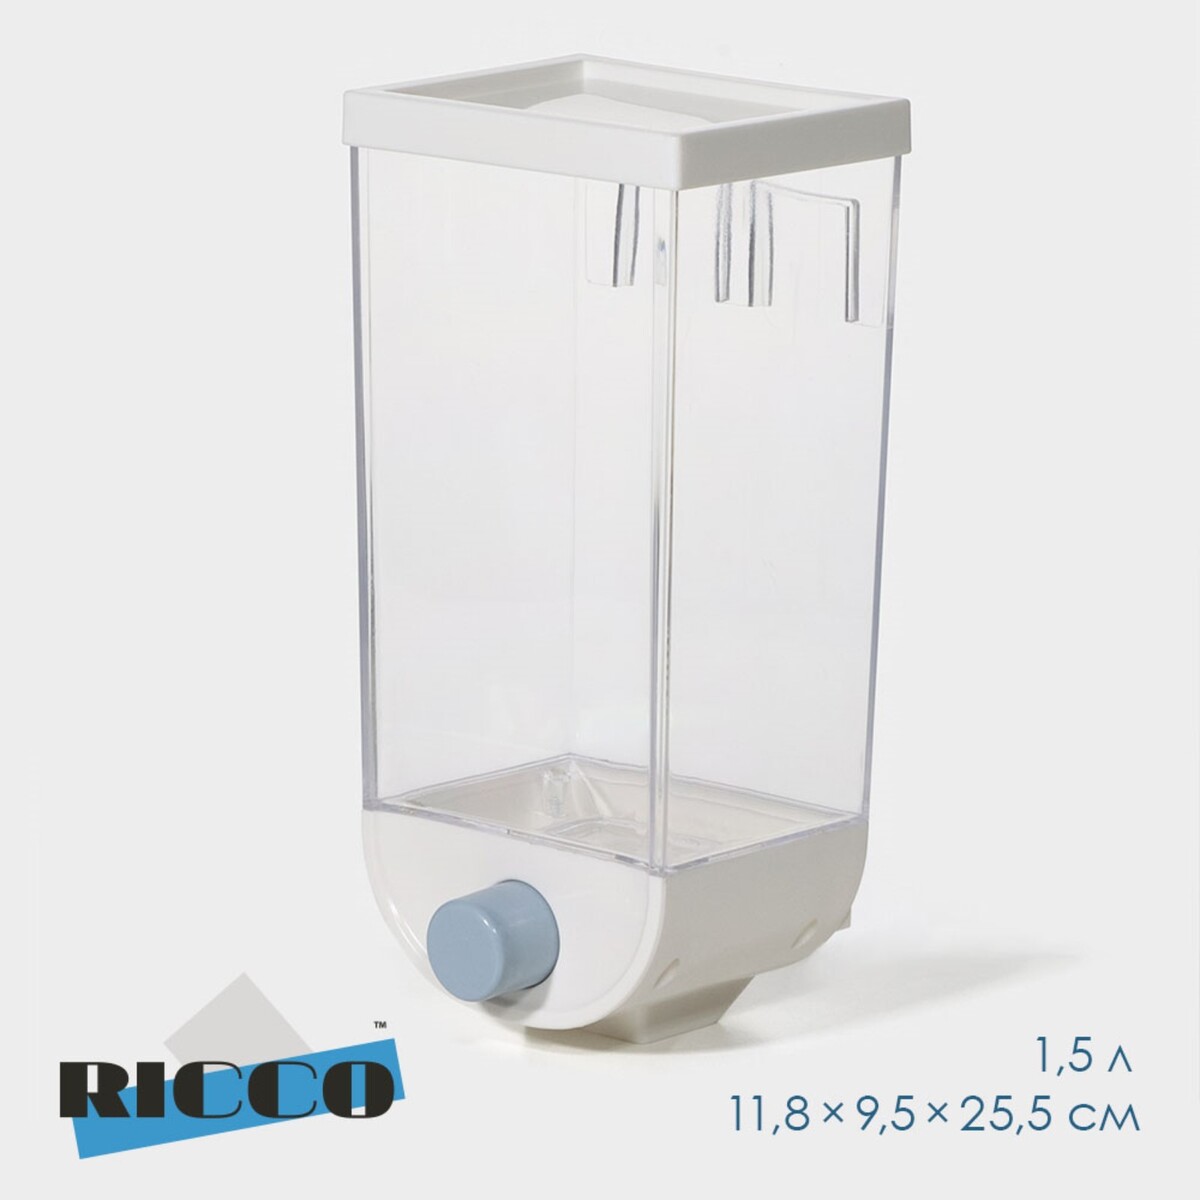 Контейнер - дозатор для хранения сыпучих ricco, 11,8×9,5×25,5 см, 1,5 л, цвет белый контейнер дозатор для хранения сыпучих ricco 11 8×9 5×19 см 1 л на 1 кг белый